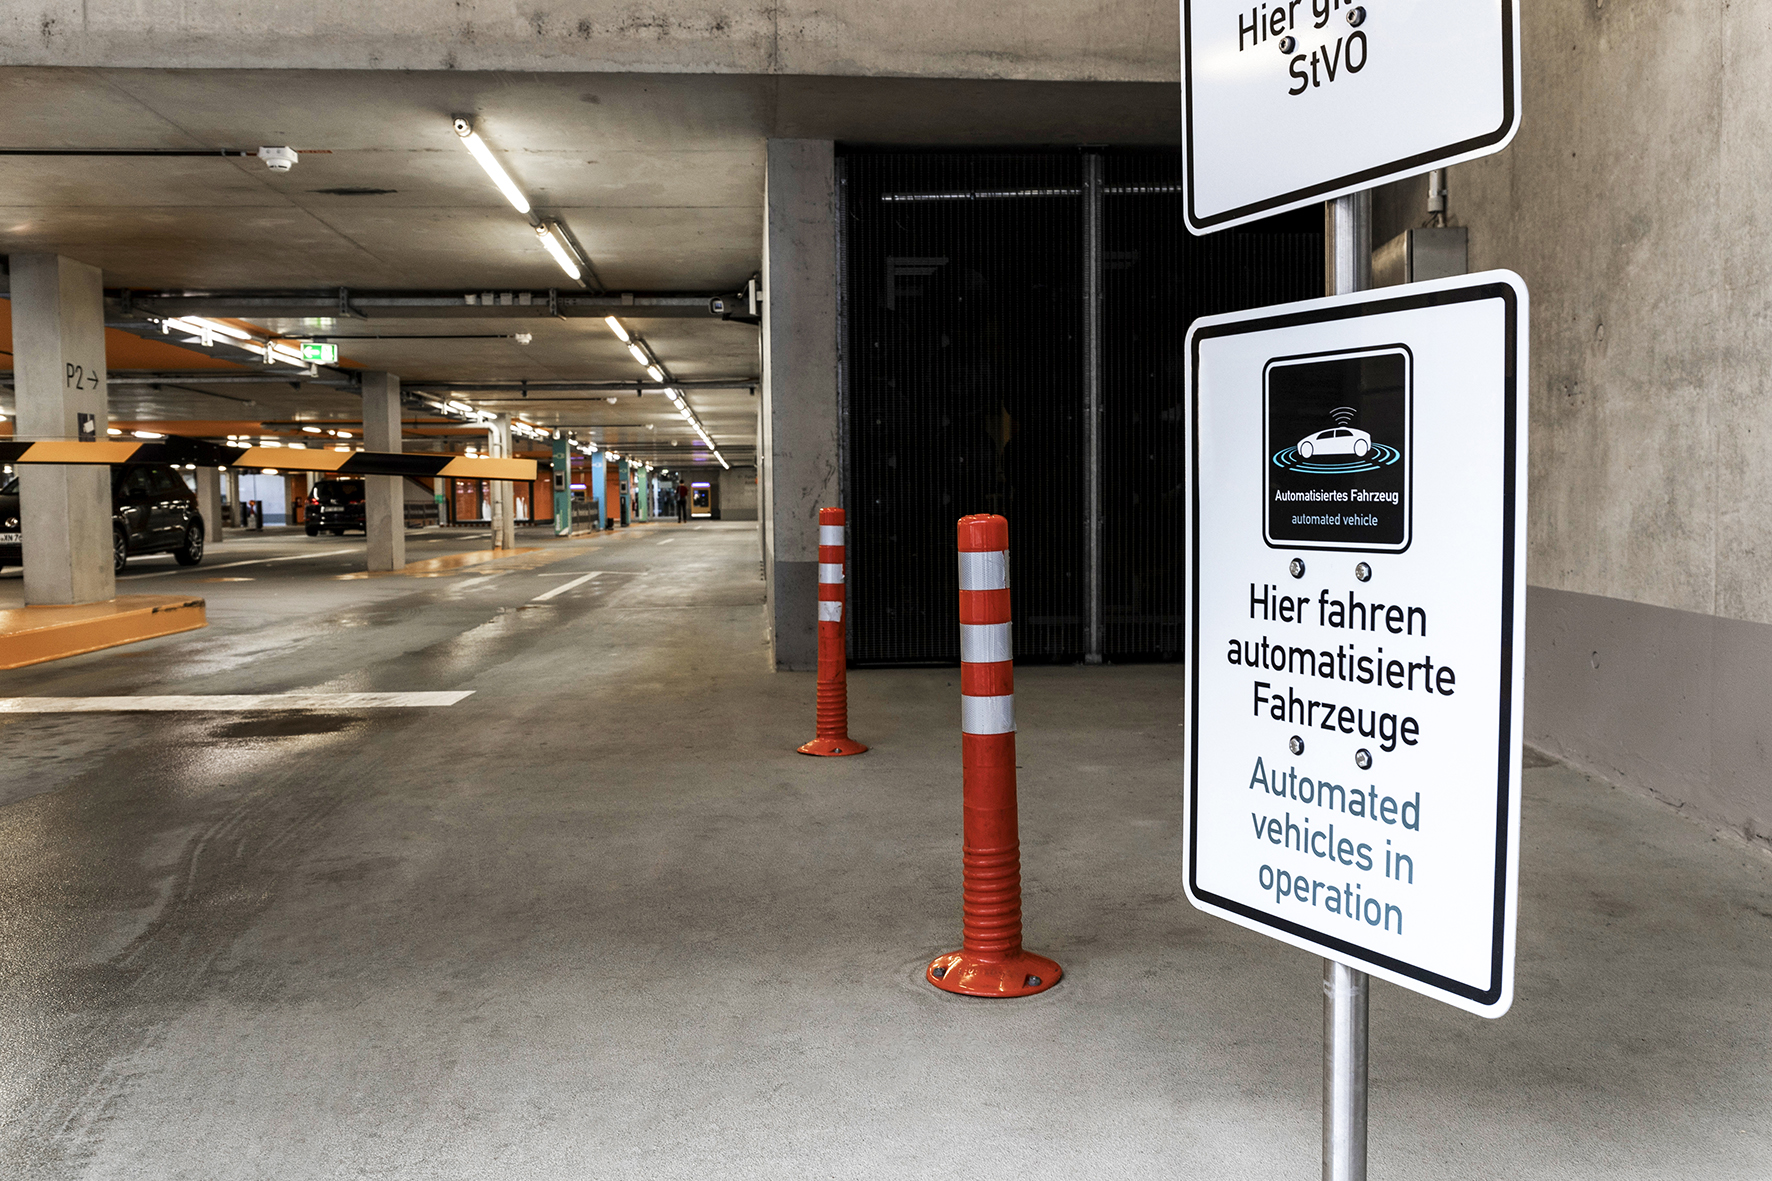 Anteprima mondiale: Bosch e Daimler ottengono l'approvazione per il parcheggio autonomo senza supervisione